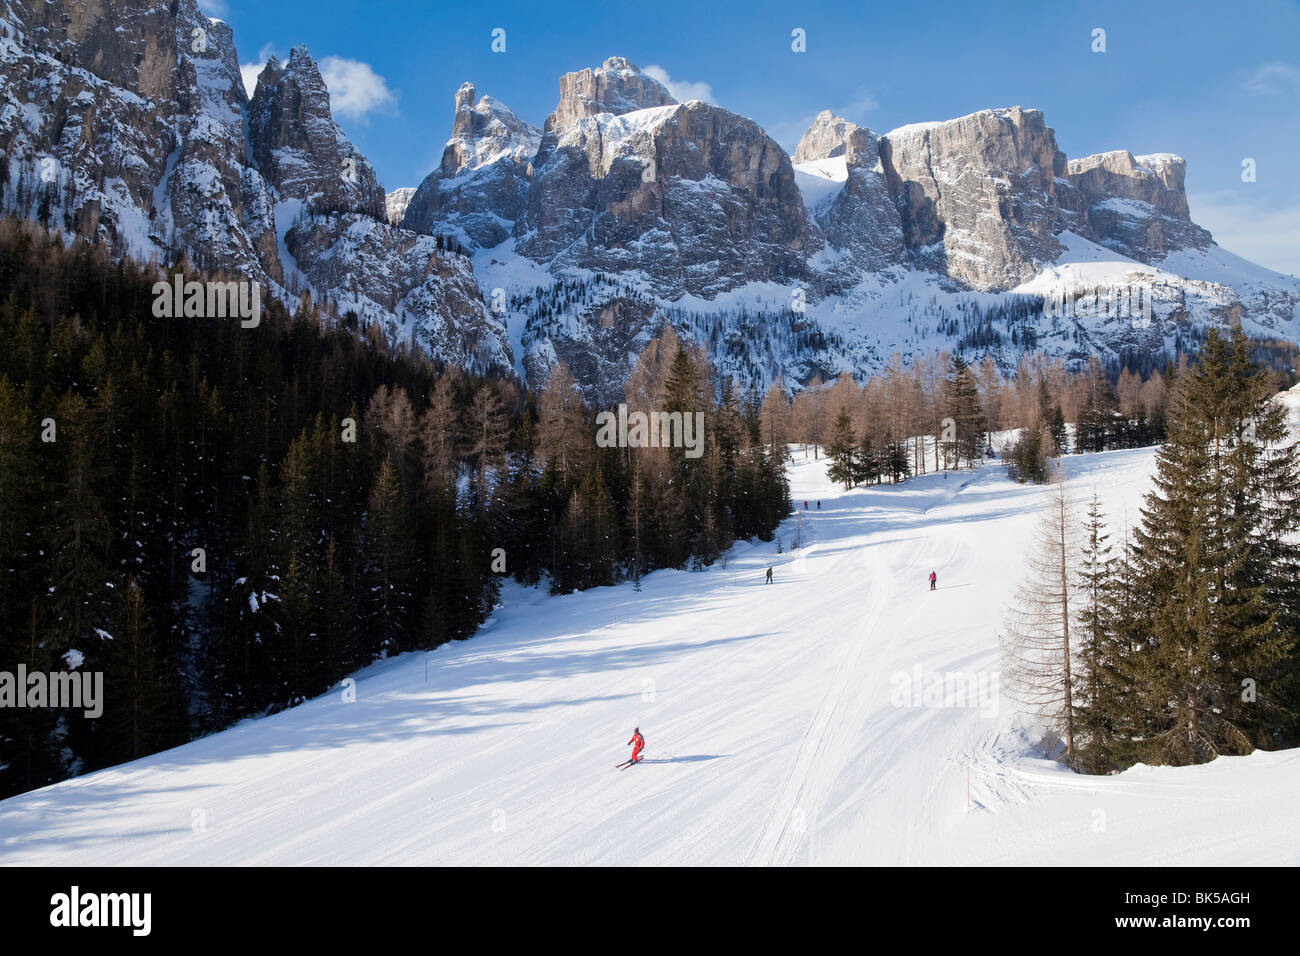 Sella Ronda Skigebiet Val Gardena, Sella Massivs Reihe von Bergen unter  Winterschnee, Dolomiten, Süd Tirol, Italien Stockfotografie - Alamy